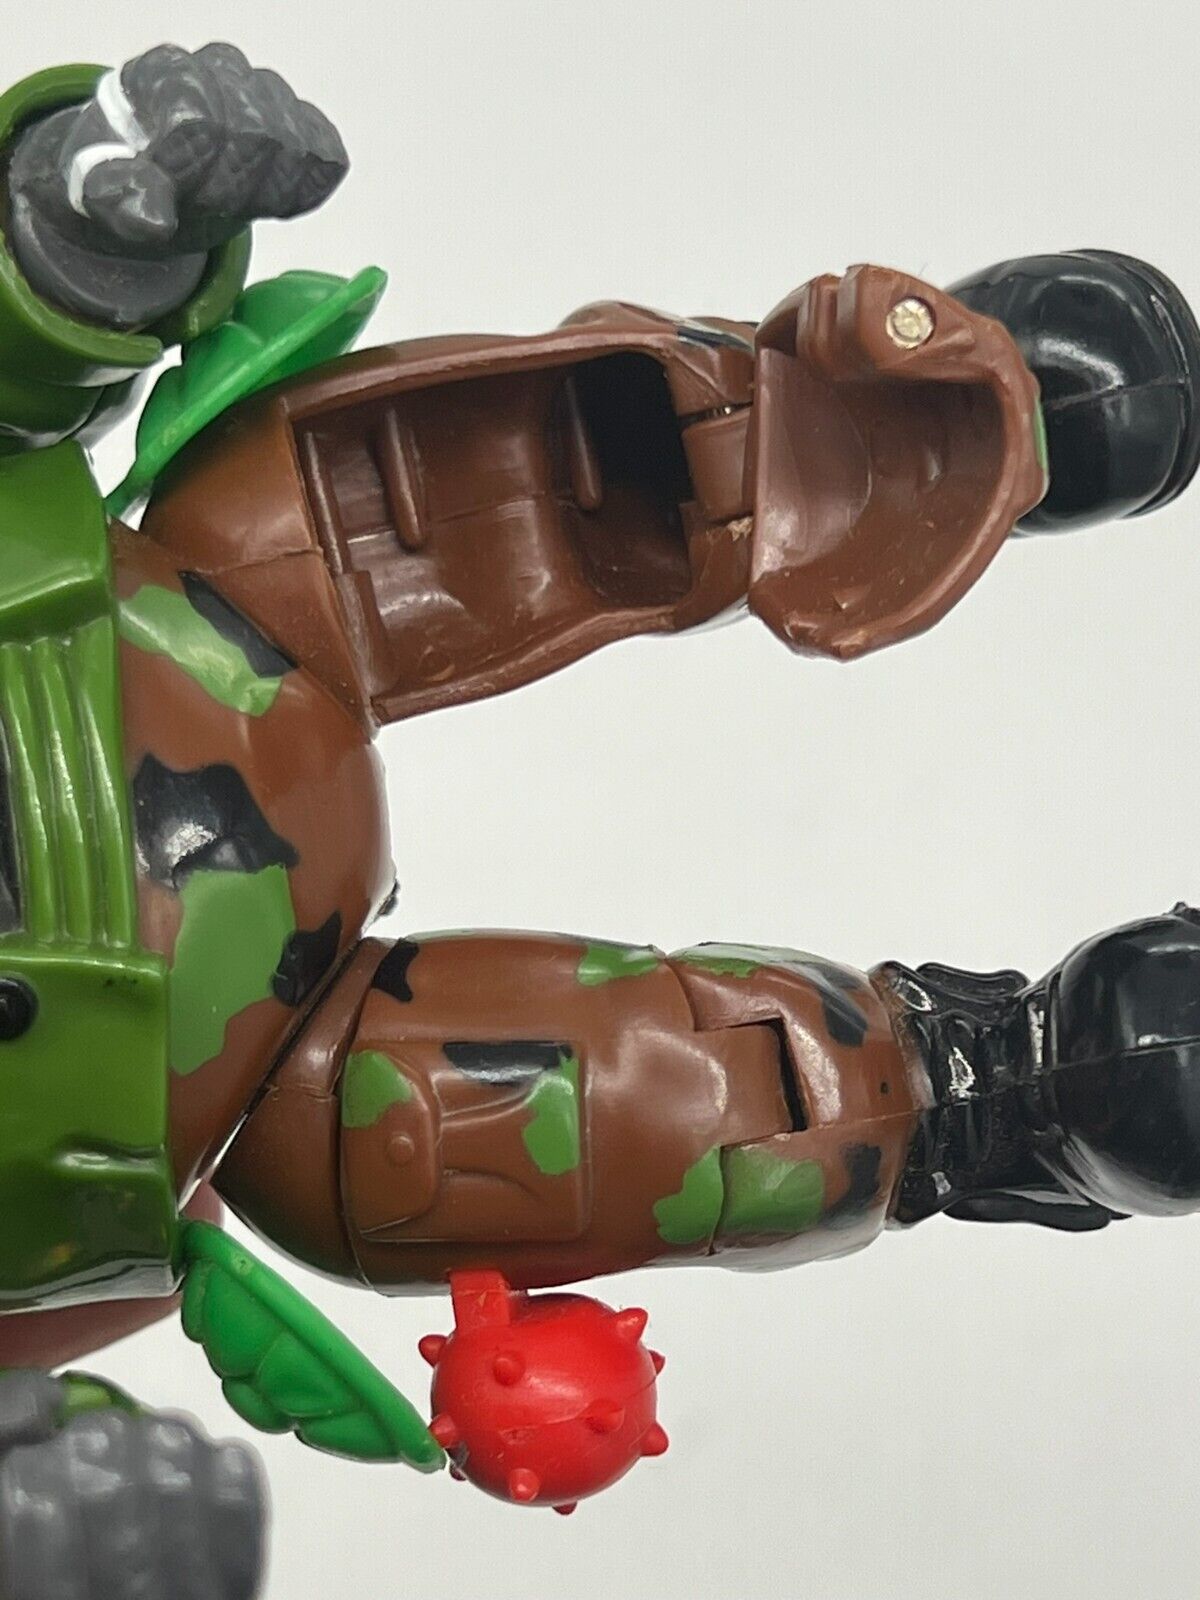 1992 TMNT Ninja Turtles Mutations Figure Rocksteady Vintage Playmates